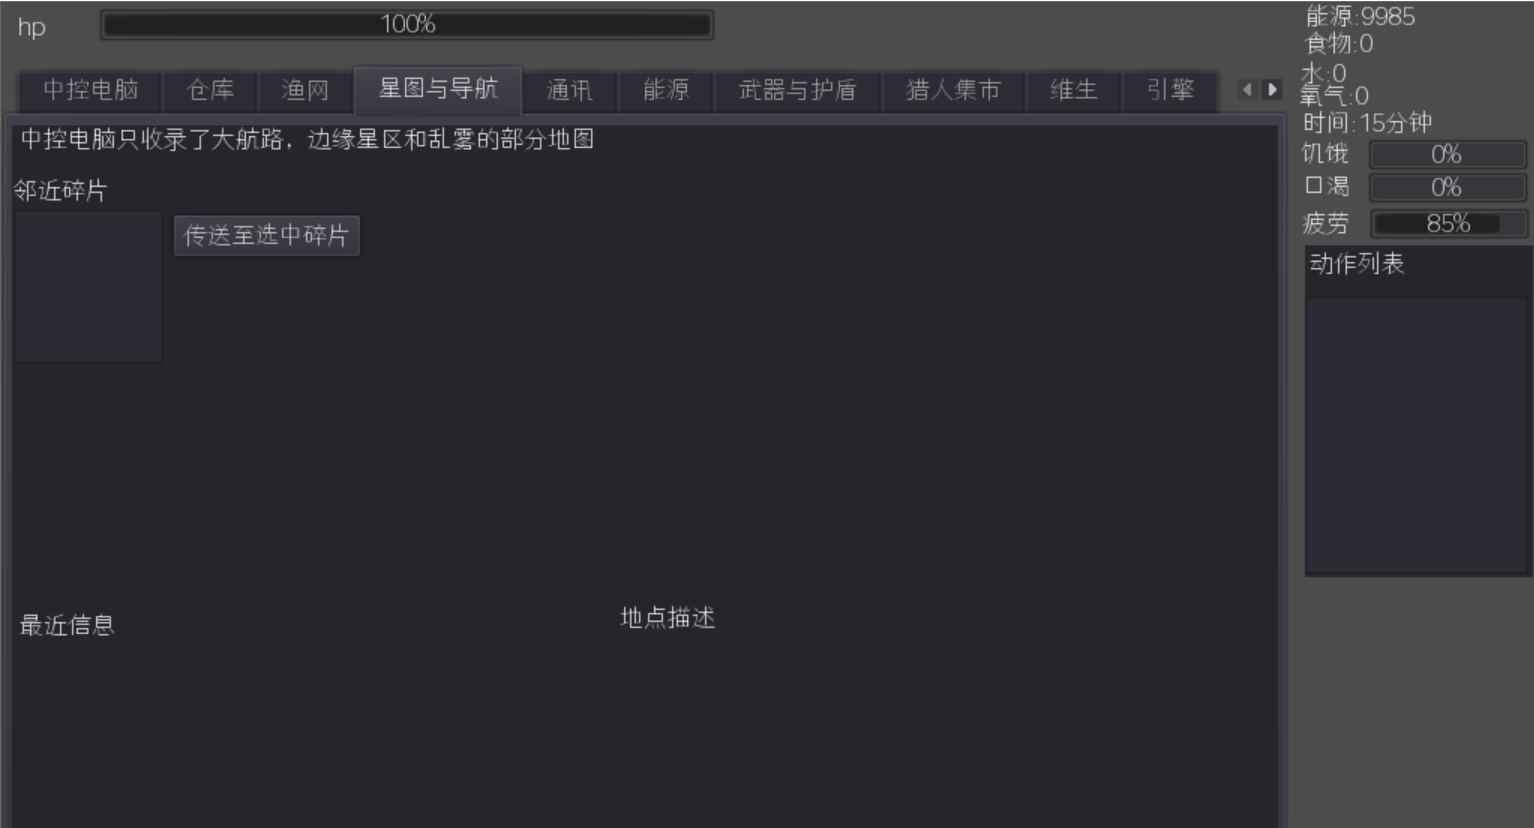 Screenshot 1 of 捕夢船 